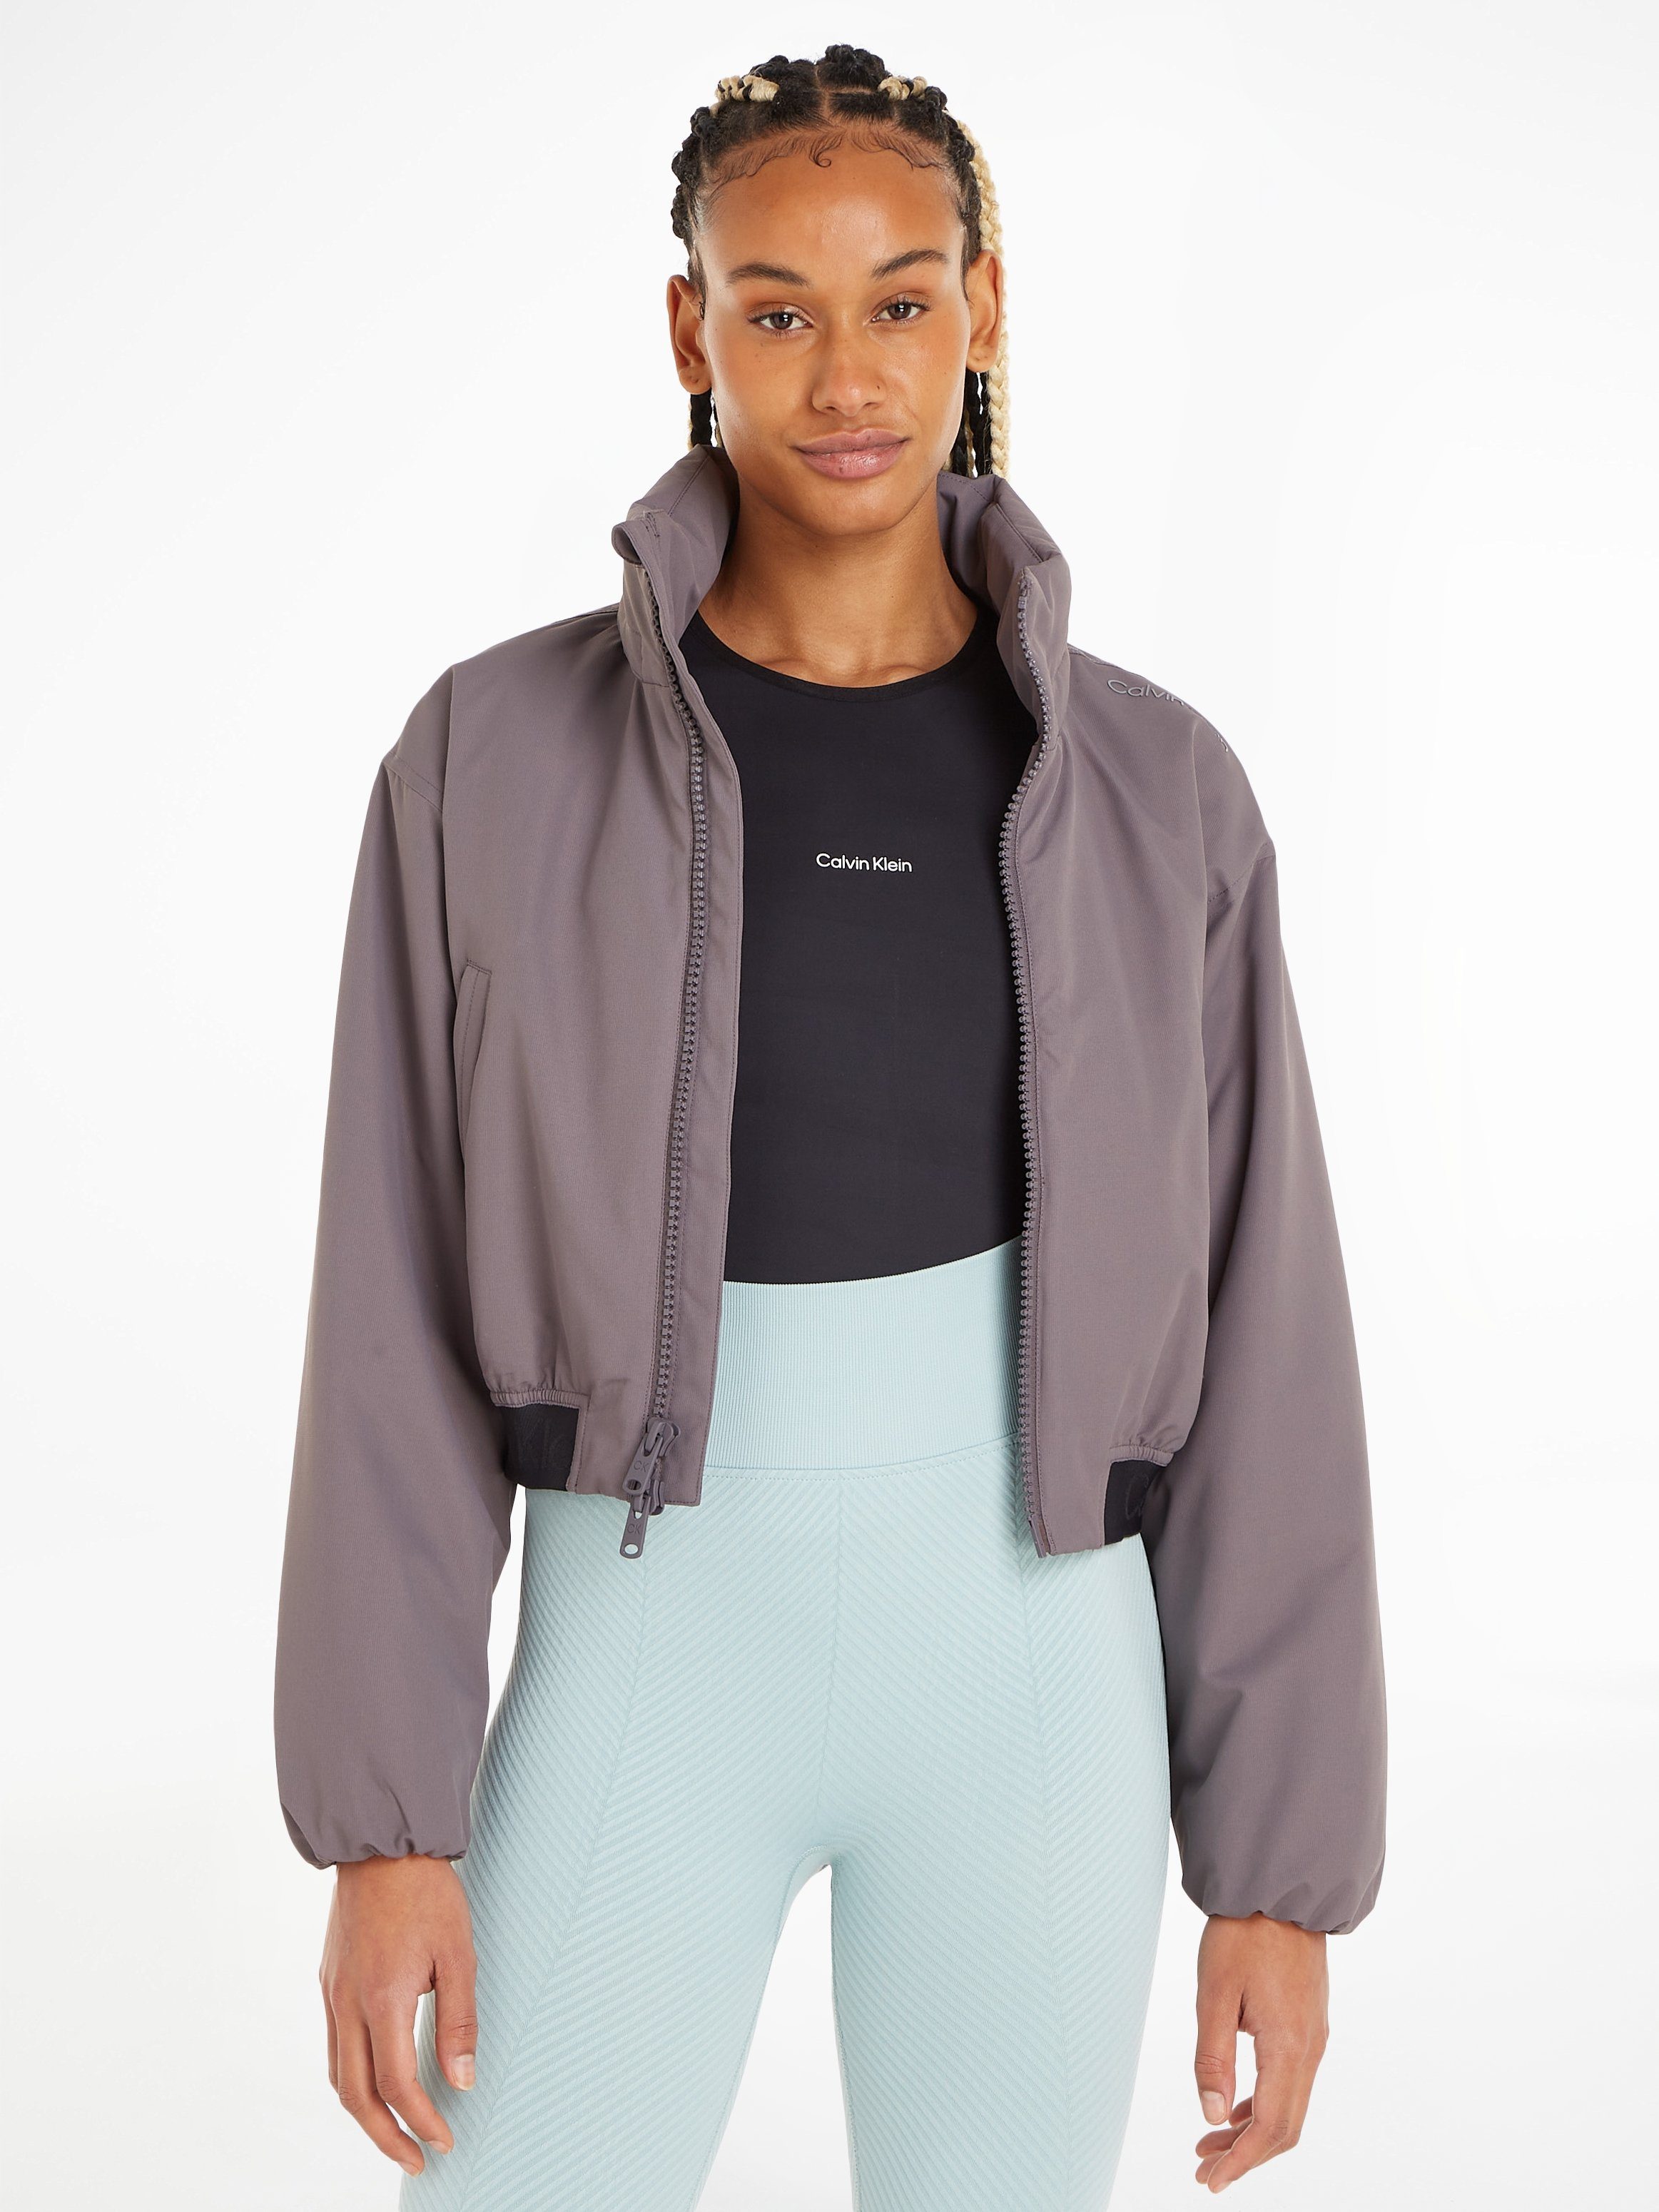 Calvin Klein Sport Outdoorjacke PW - Padded Jacket grau | Jacken